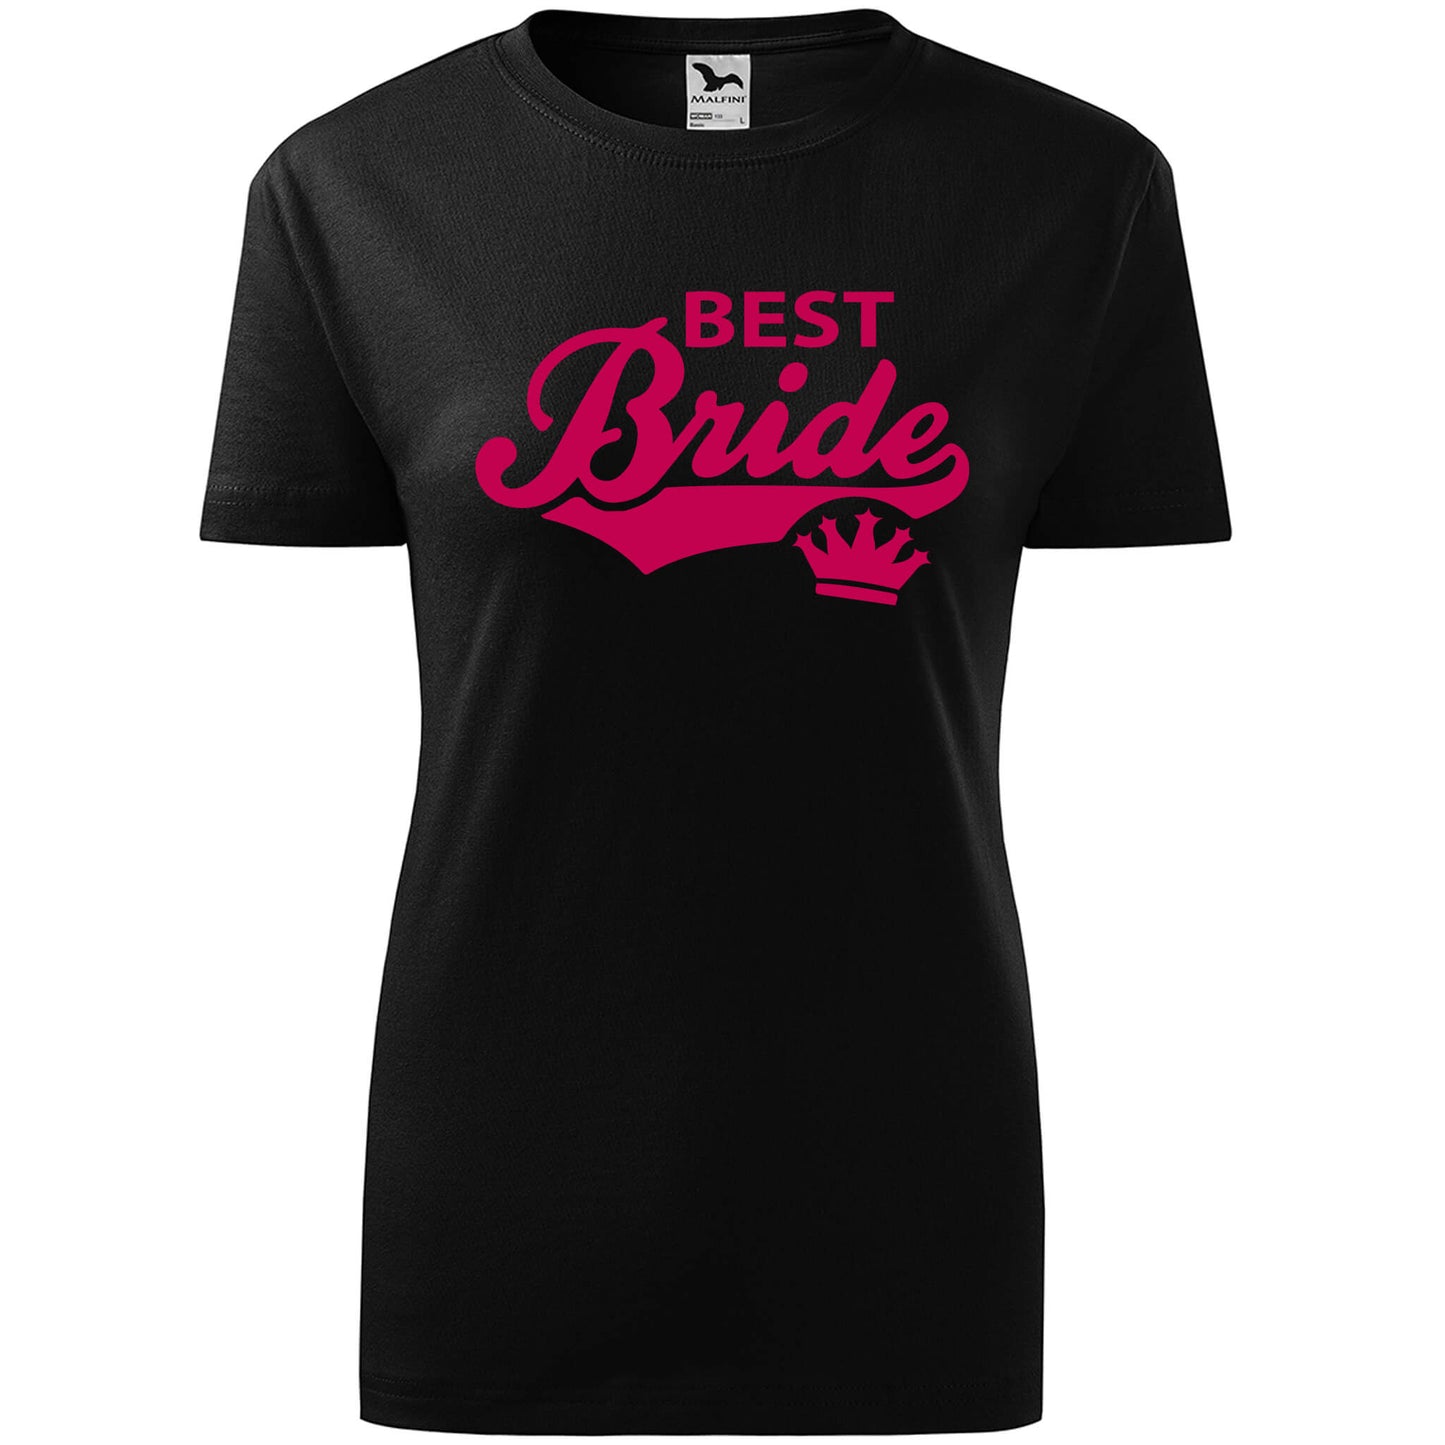 T-shirt - Best bride - rvdesignprint